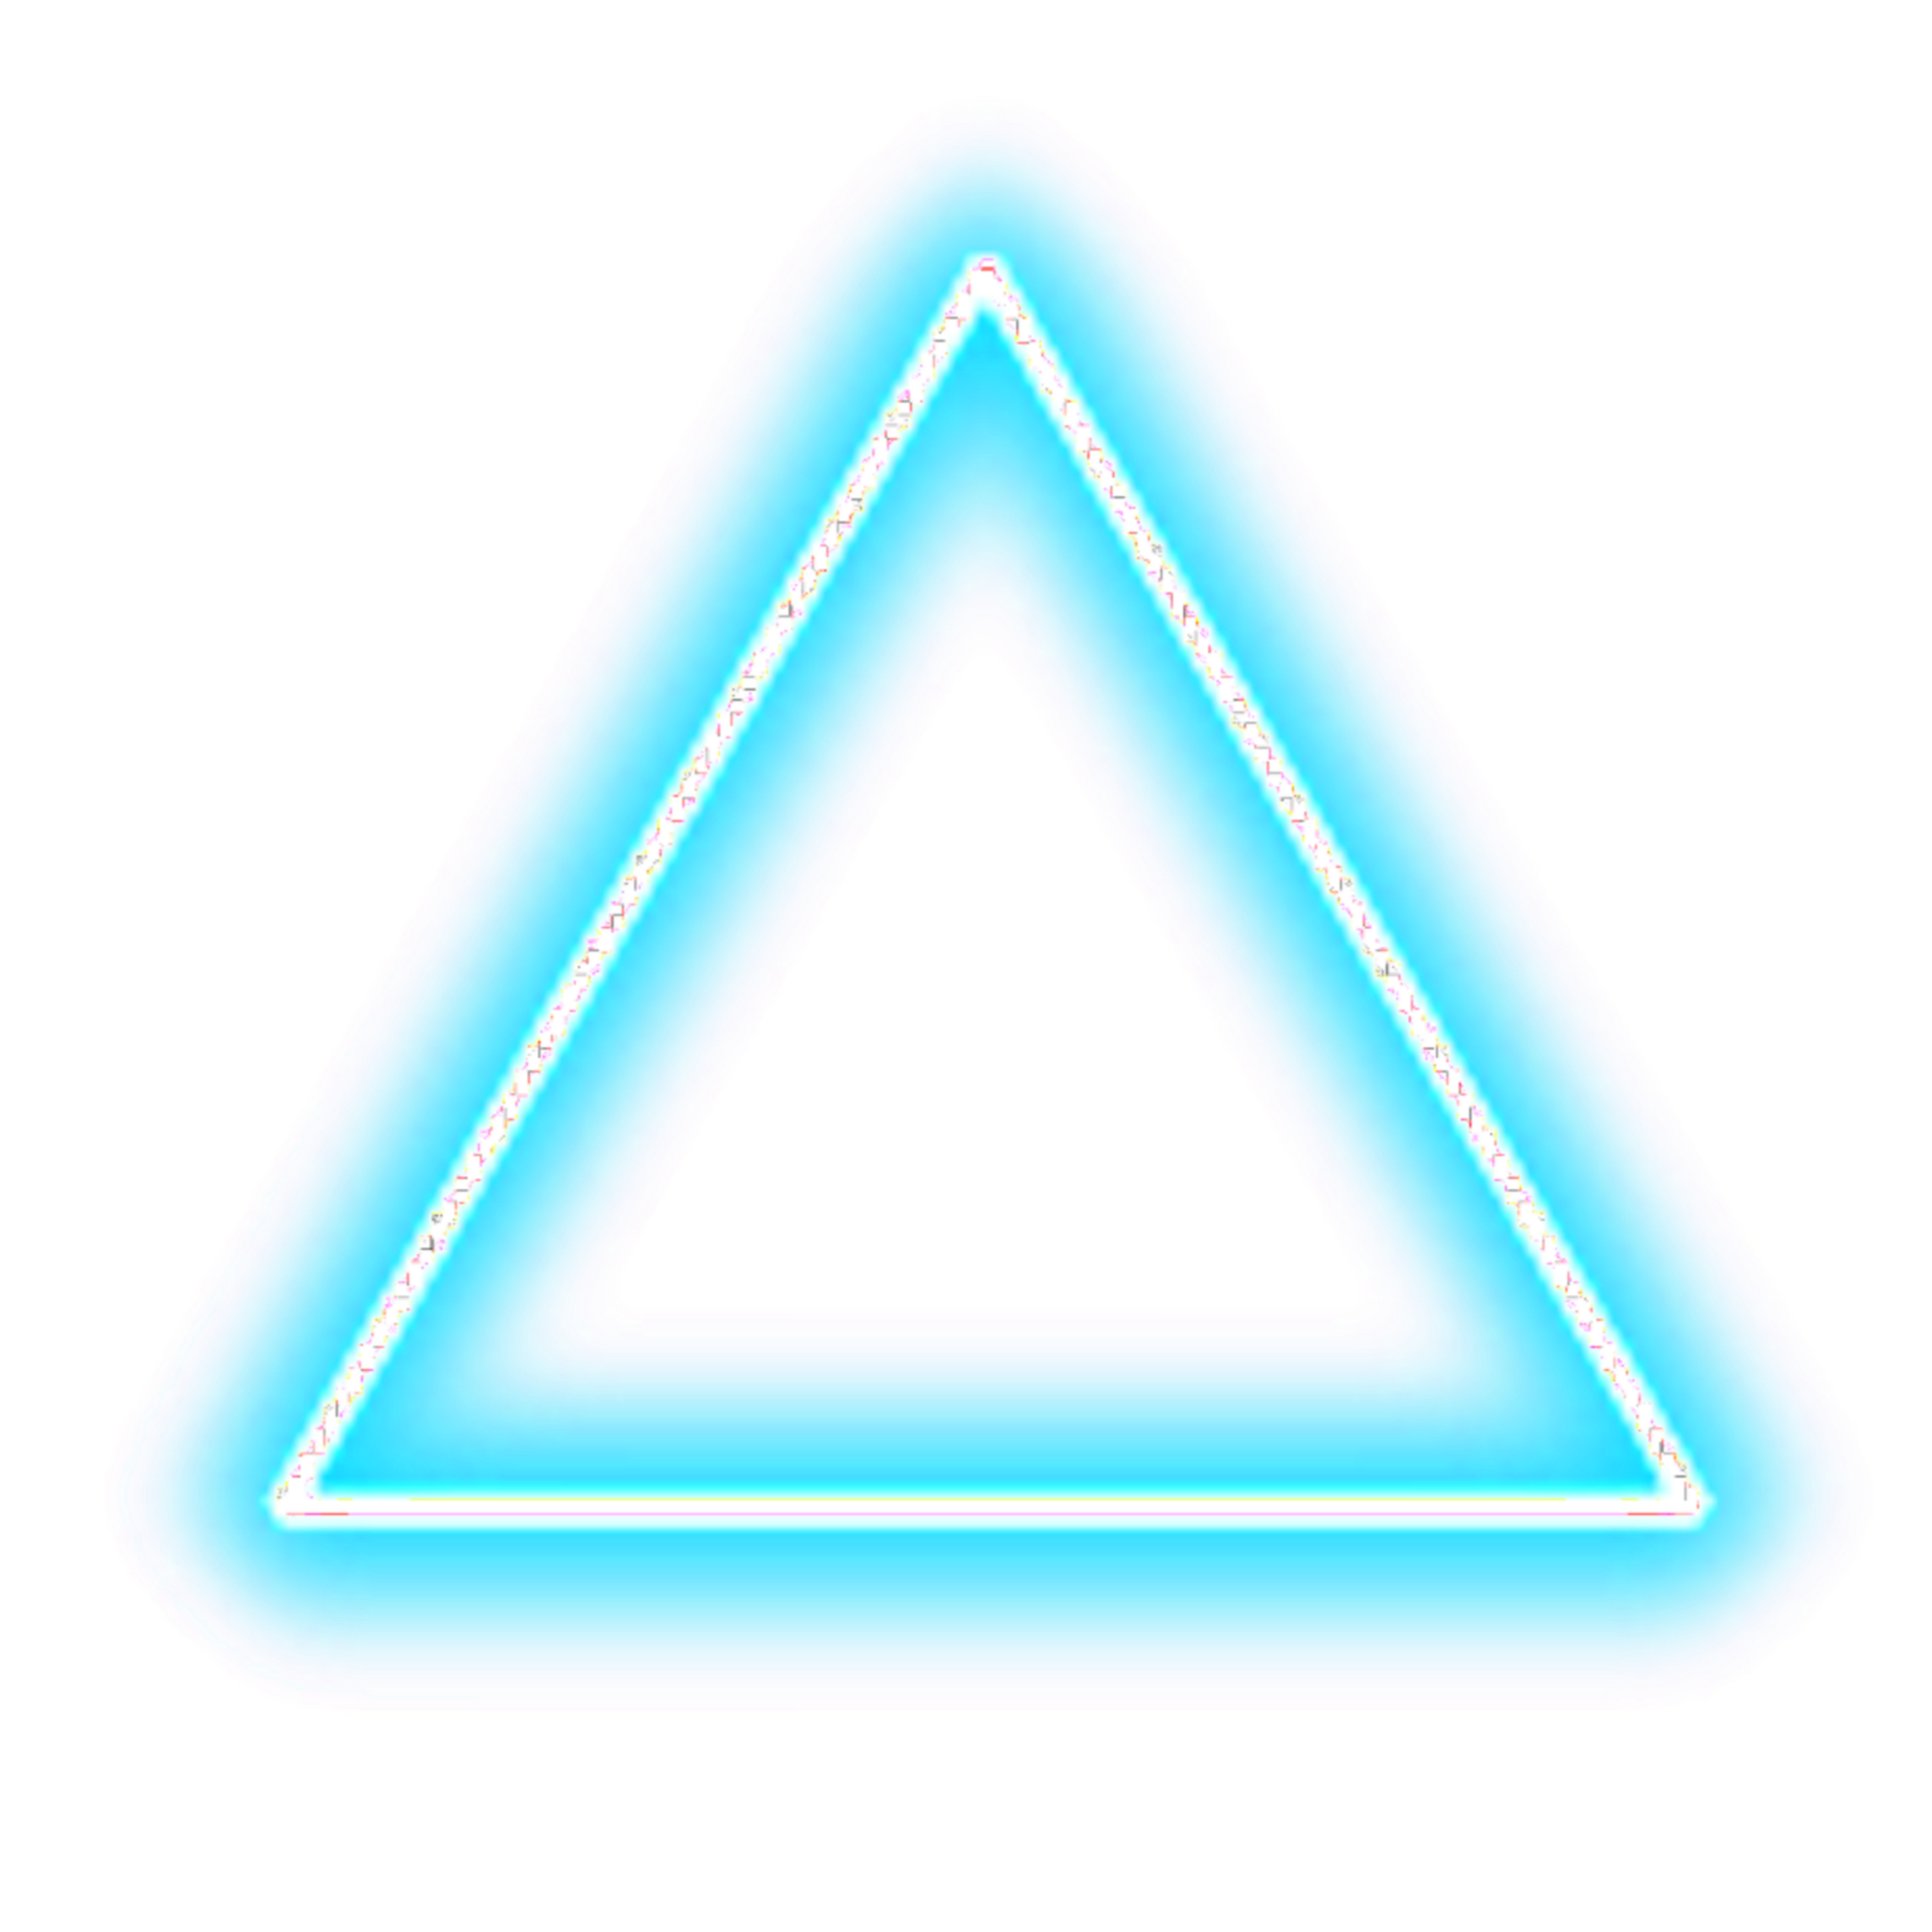 neon triangle neonshape neontriangles sticker by @chxm_chxmz